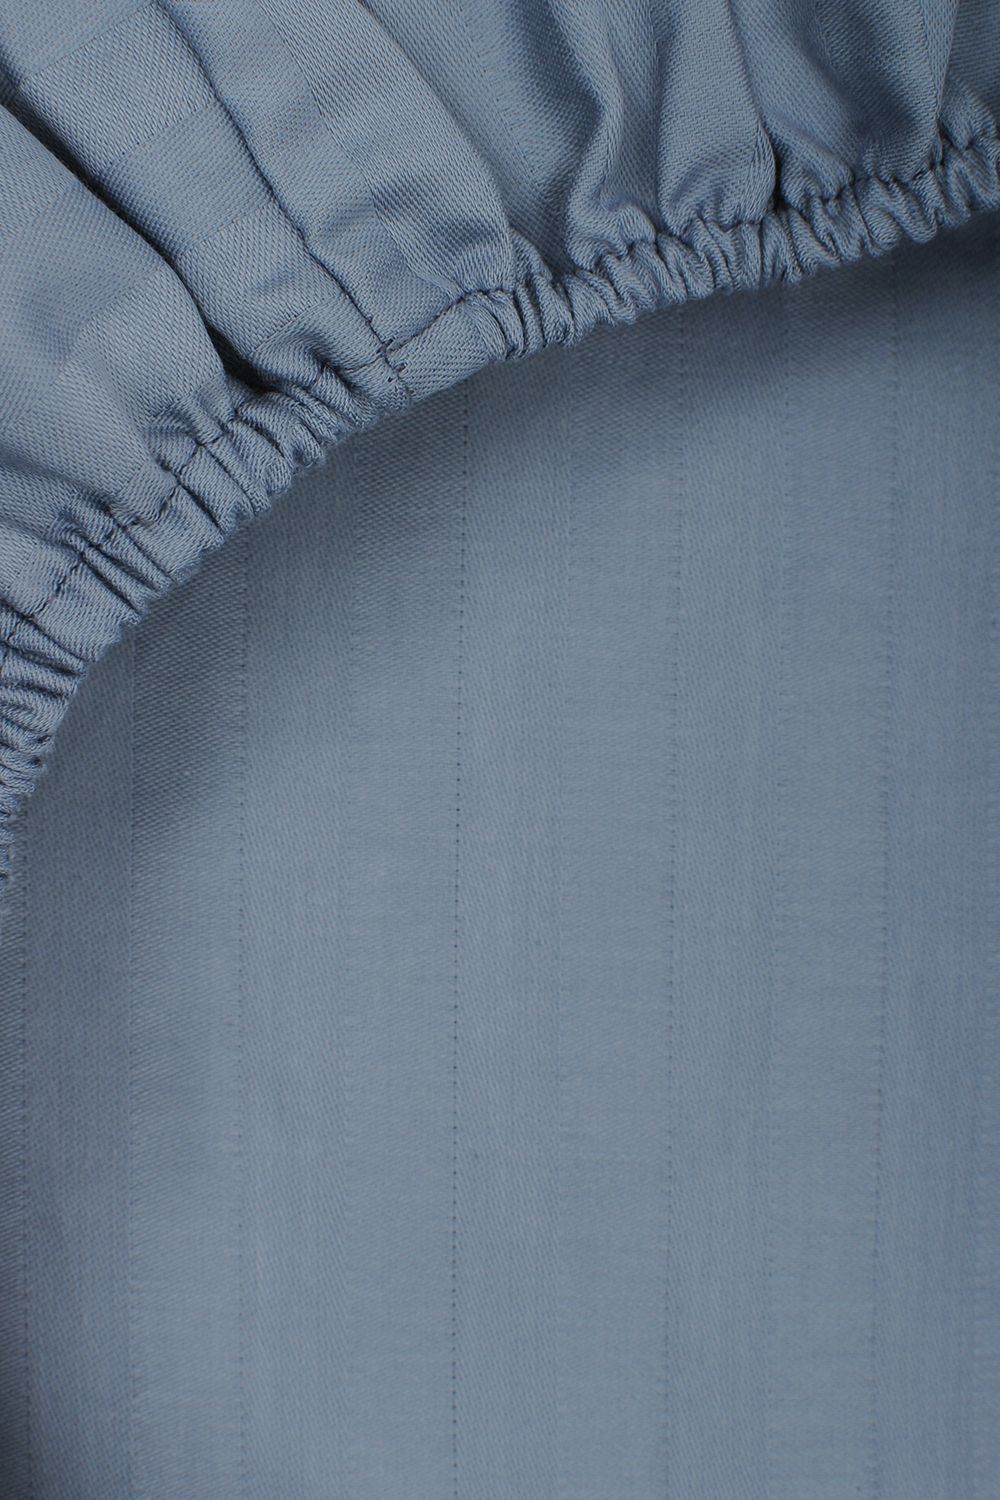 Простыня на резинке HoReCa 180х200х20, страйп-сатин, арт. 4870 - синий туман